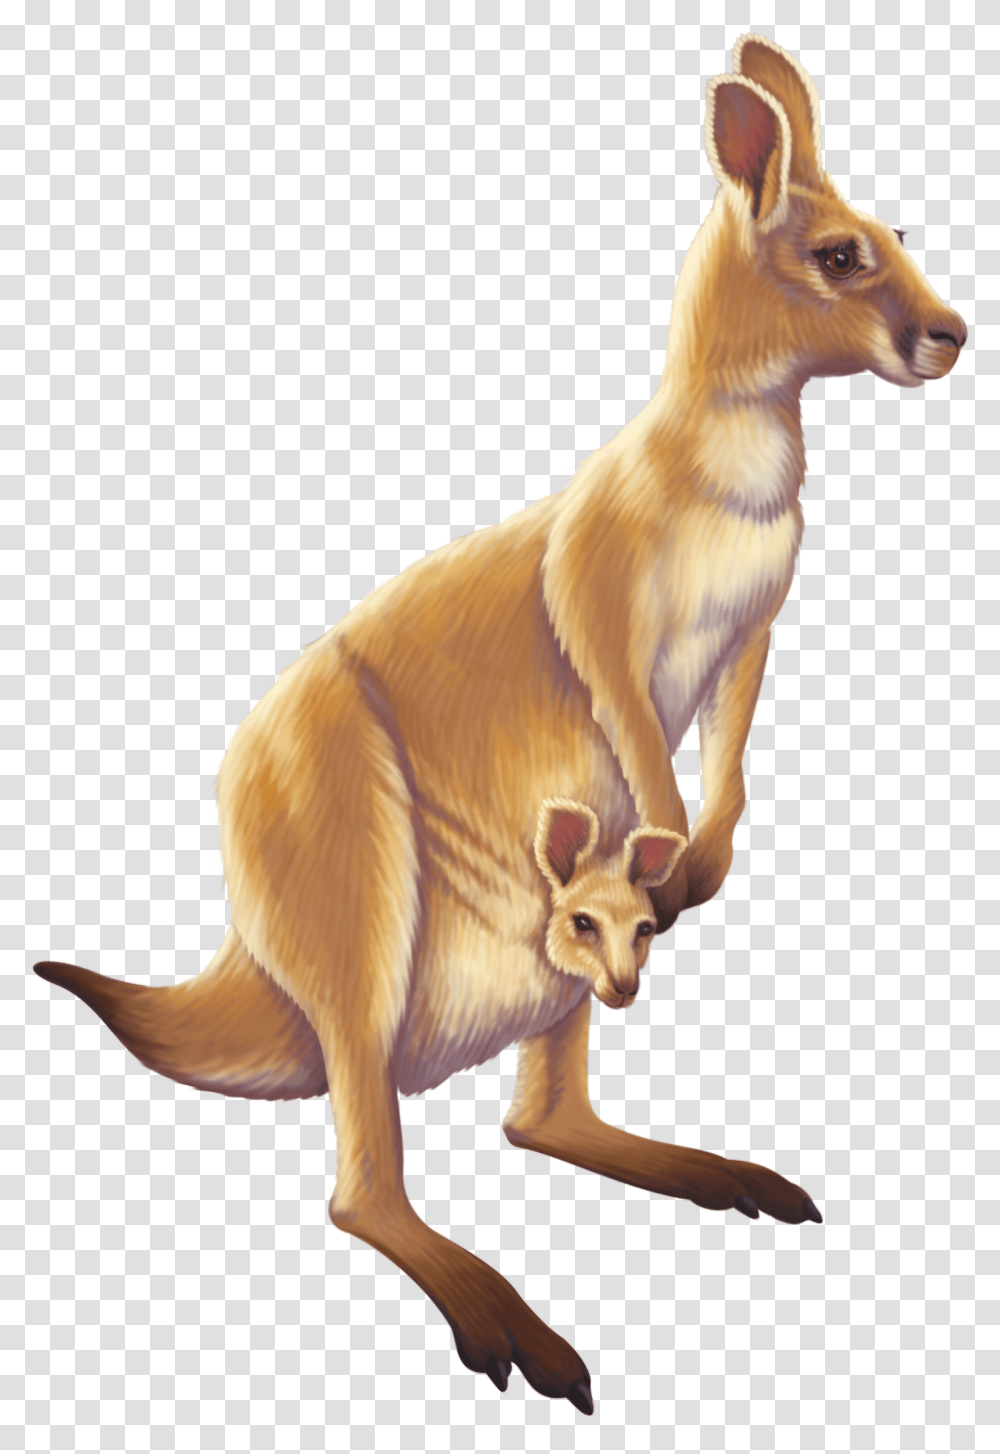 Download Kangaroo Australia Animal Free Image Hd Animals, Mammal, Wallaby, Dog, Pet Transparent Png